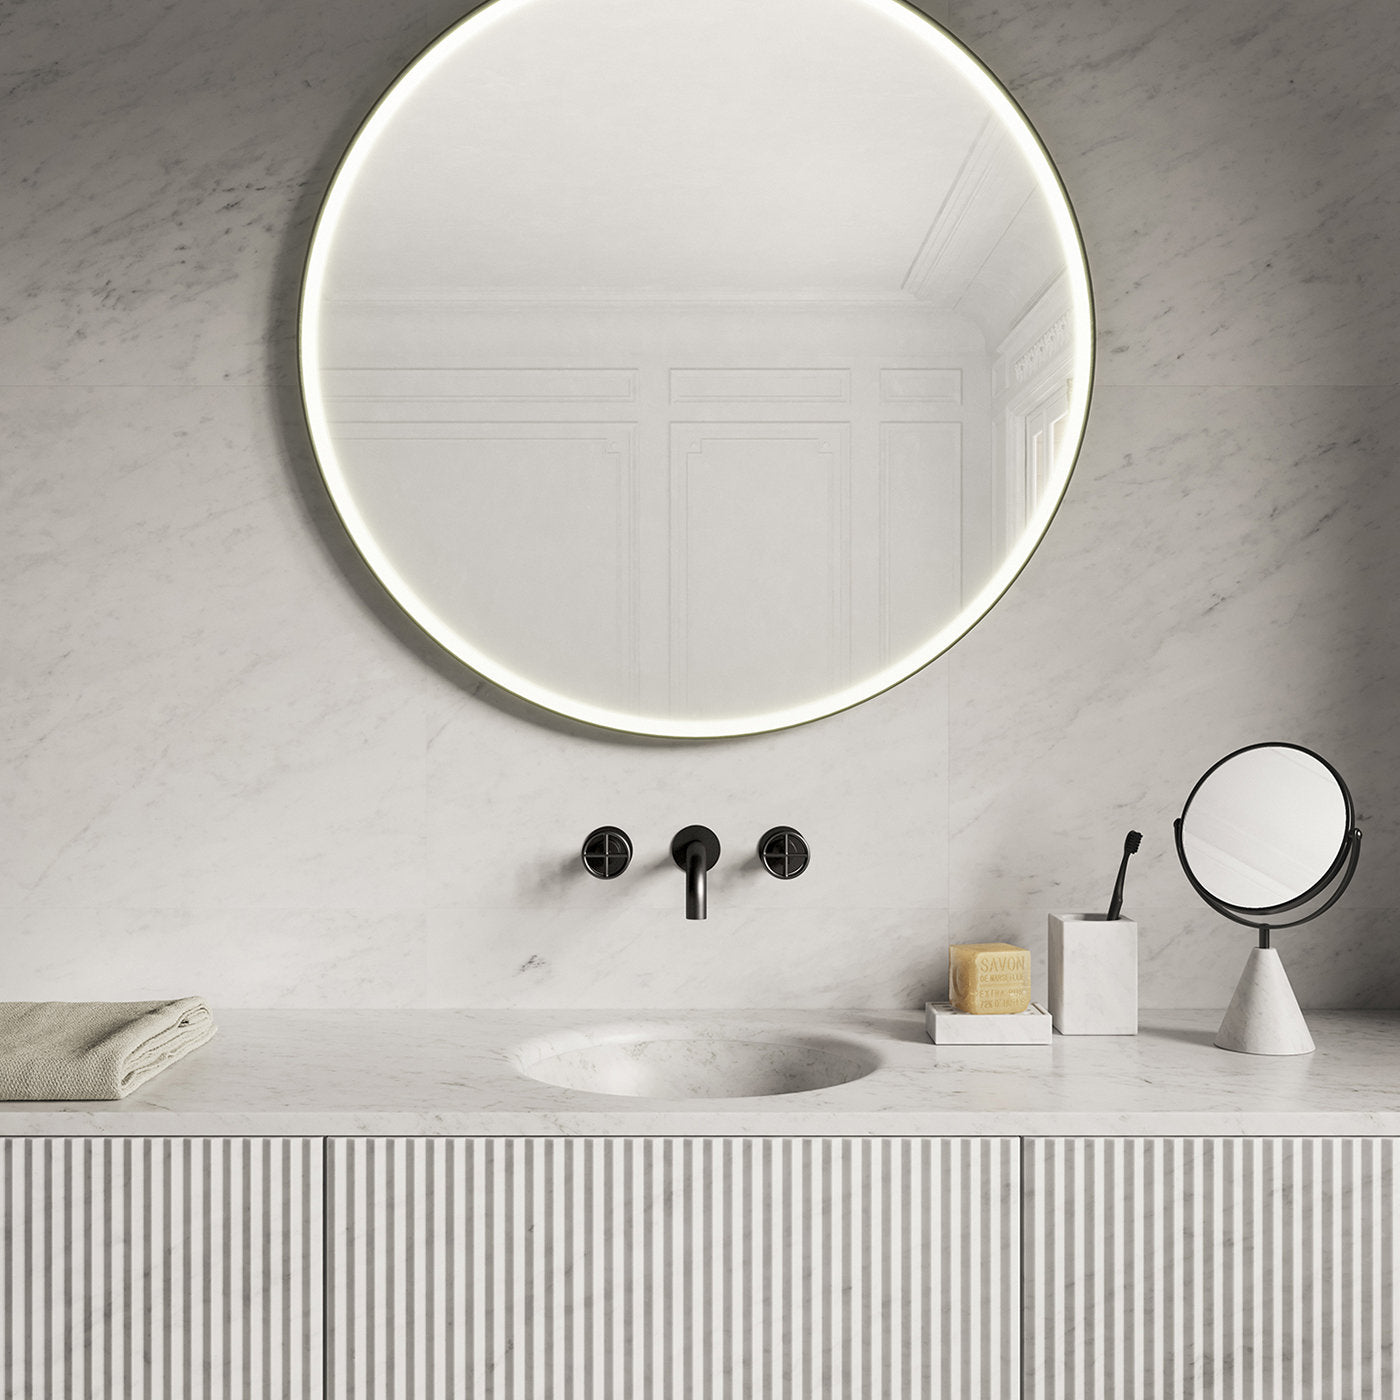 Round Mirari Mirror by Elisa Ossino - Alternative view 1